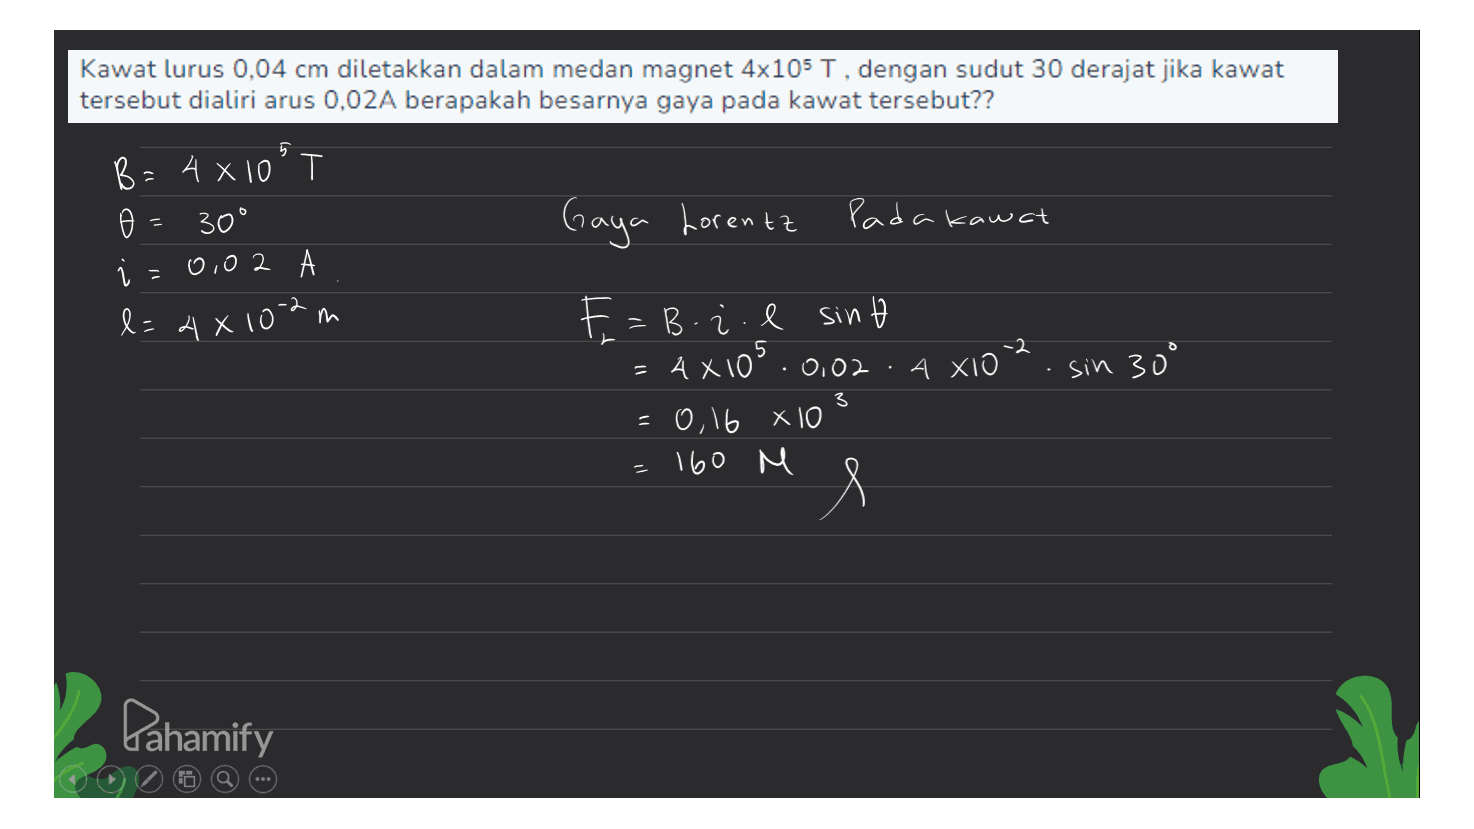 Kawat lurus 0.04 cm diletakkan dalam medan magnet 4x105 T, dengan sudut 30 derajat jika kawat tersebut dialiri arus 0,02A berapakah besarnya gaya pada kawat tersebut?? 5 0 B=4x10° @ 30° 0,02 l=4x102m Gaya Lorentz Pada kawat 5 AXIO 02 E=B. z. l sint 4X10².0,02 =0,16 x 10 160 M sin 30° 3 e Pahamify 